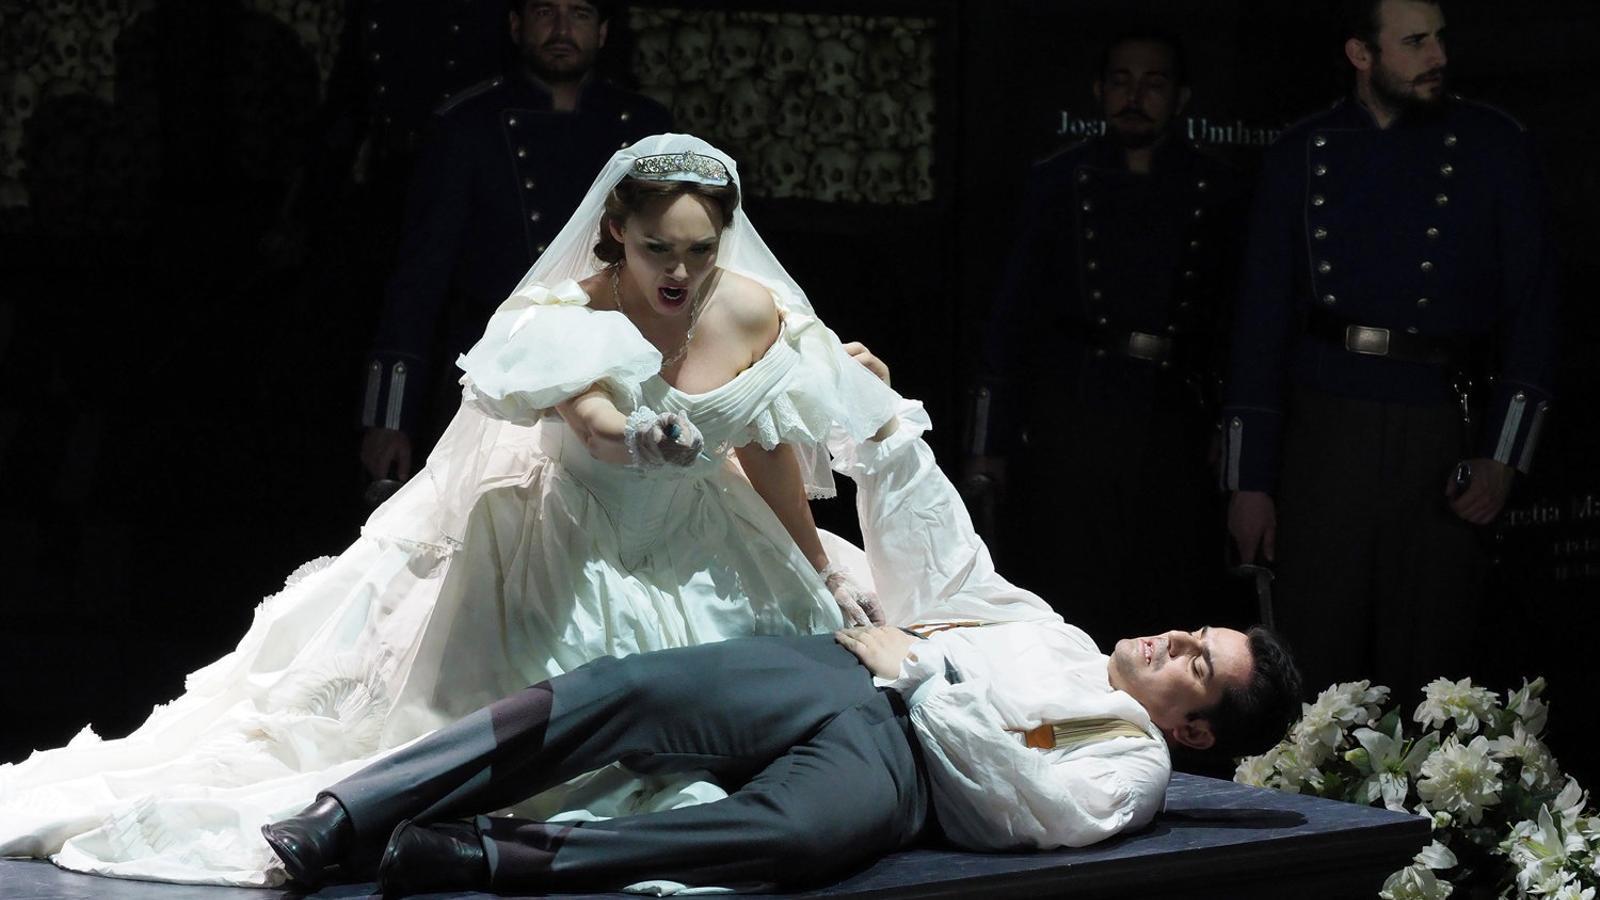 La soprano Aida Garifullina i el tenor albanès Saimir Pirgu en una escena de l’òpera Roméo et Juliette al Liceu. / A. BOFILL / GRAN TEATRE DEL LICEU